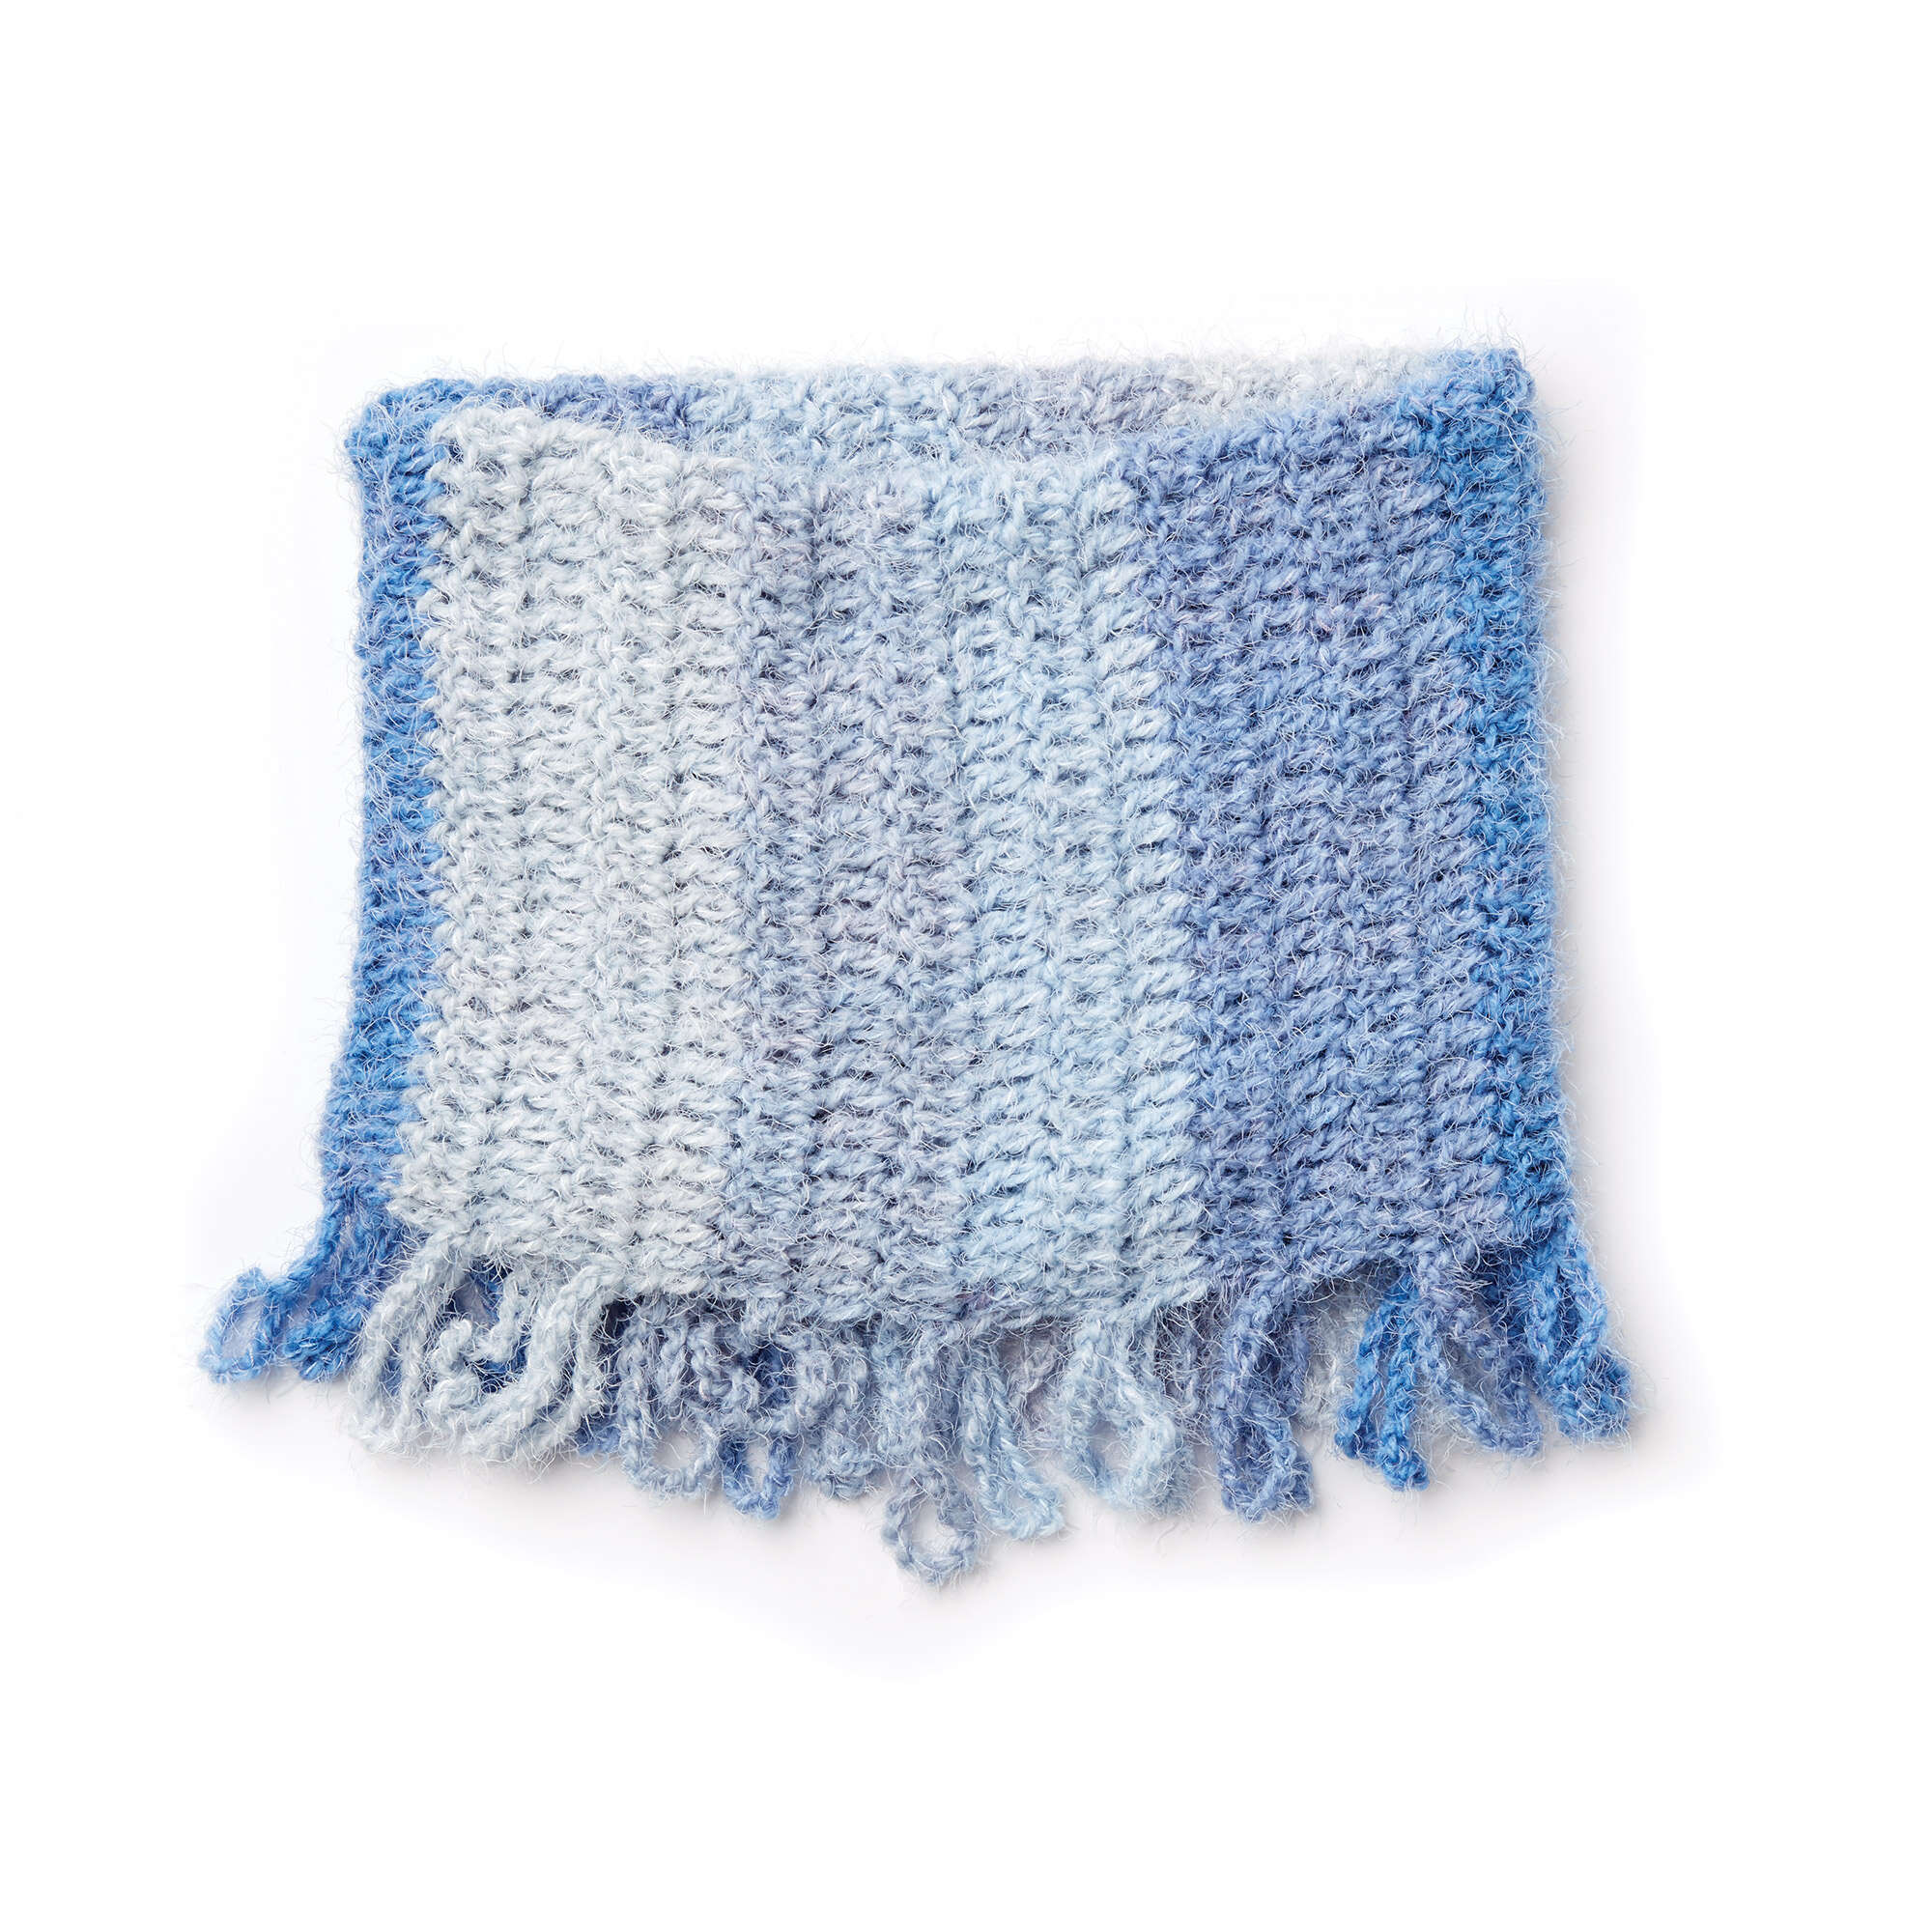 Crochet an Easy blanket using Caron Latte Cakes ! 